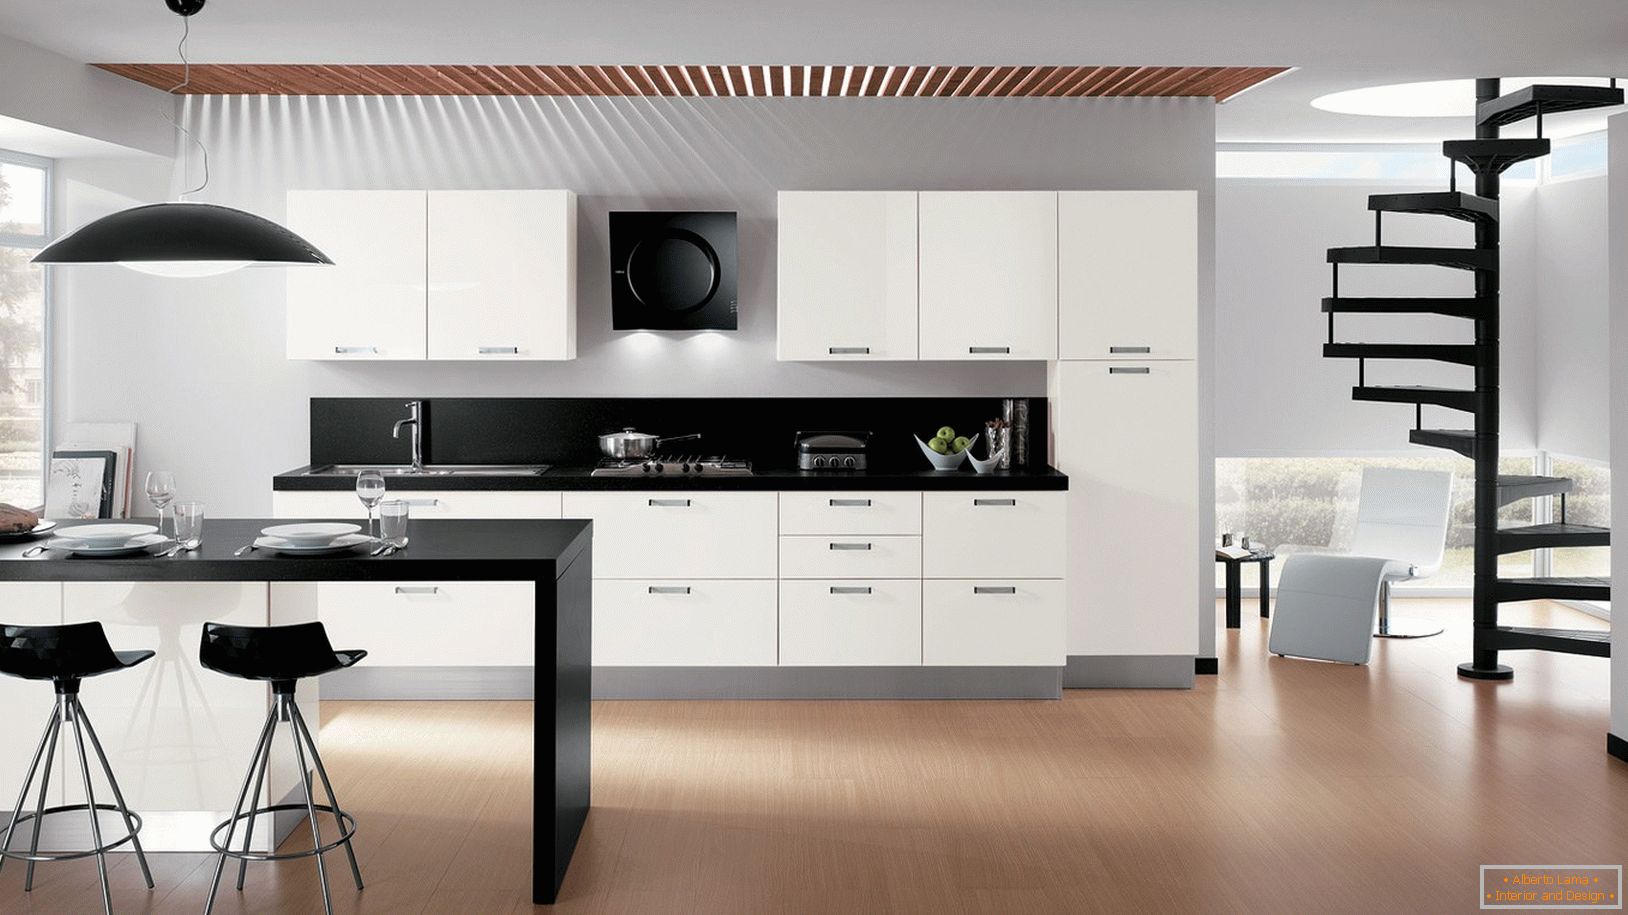 Kitchen design in minimalism style